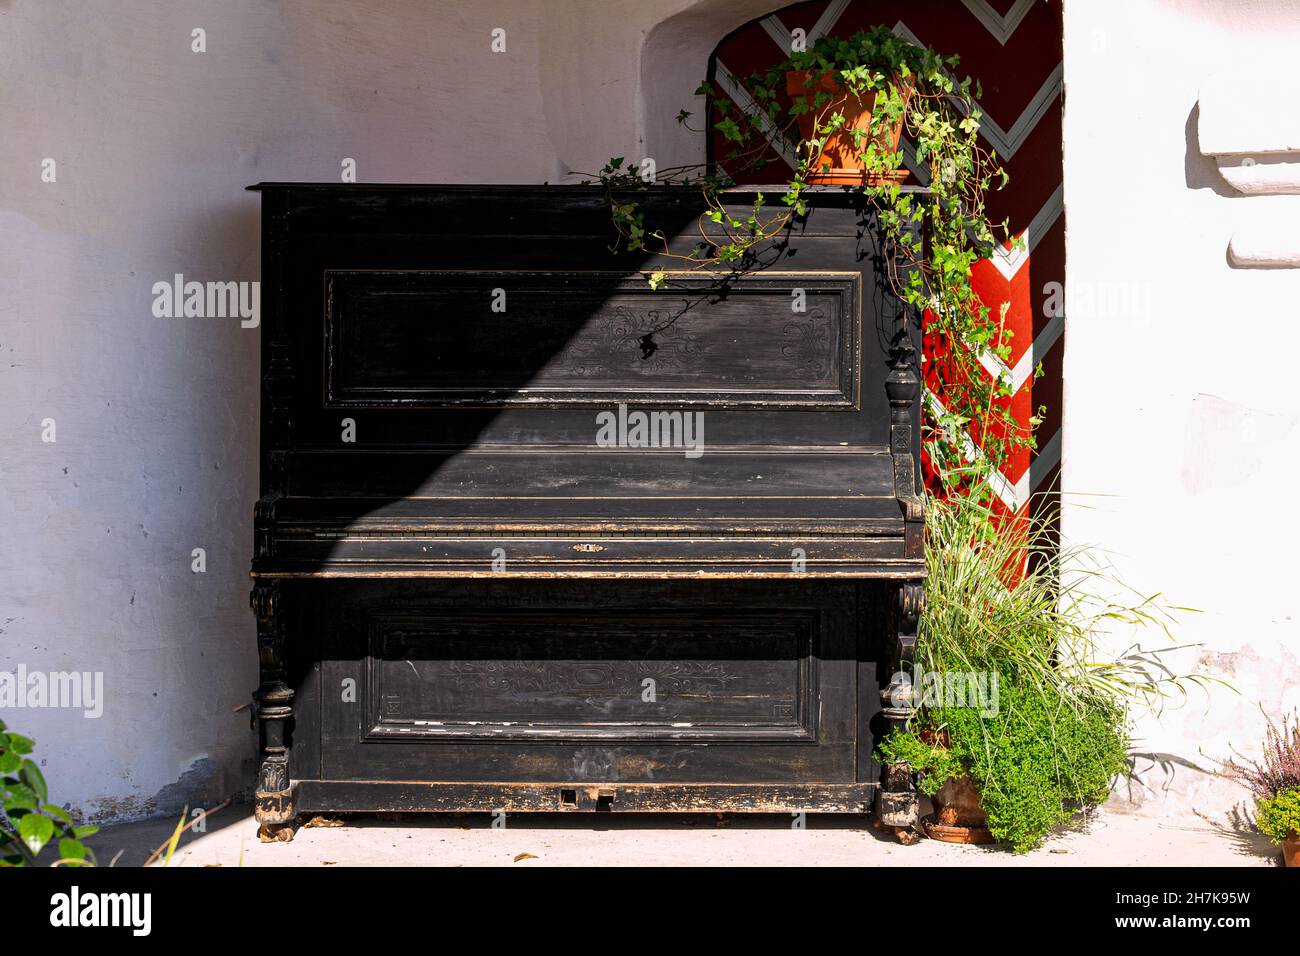 Un vieux piano noir dans une maison de campagne au coin de la terrasse. Banque D'Images